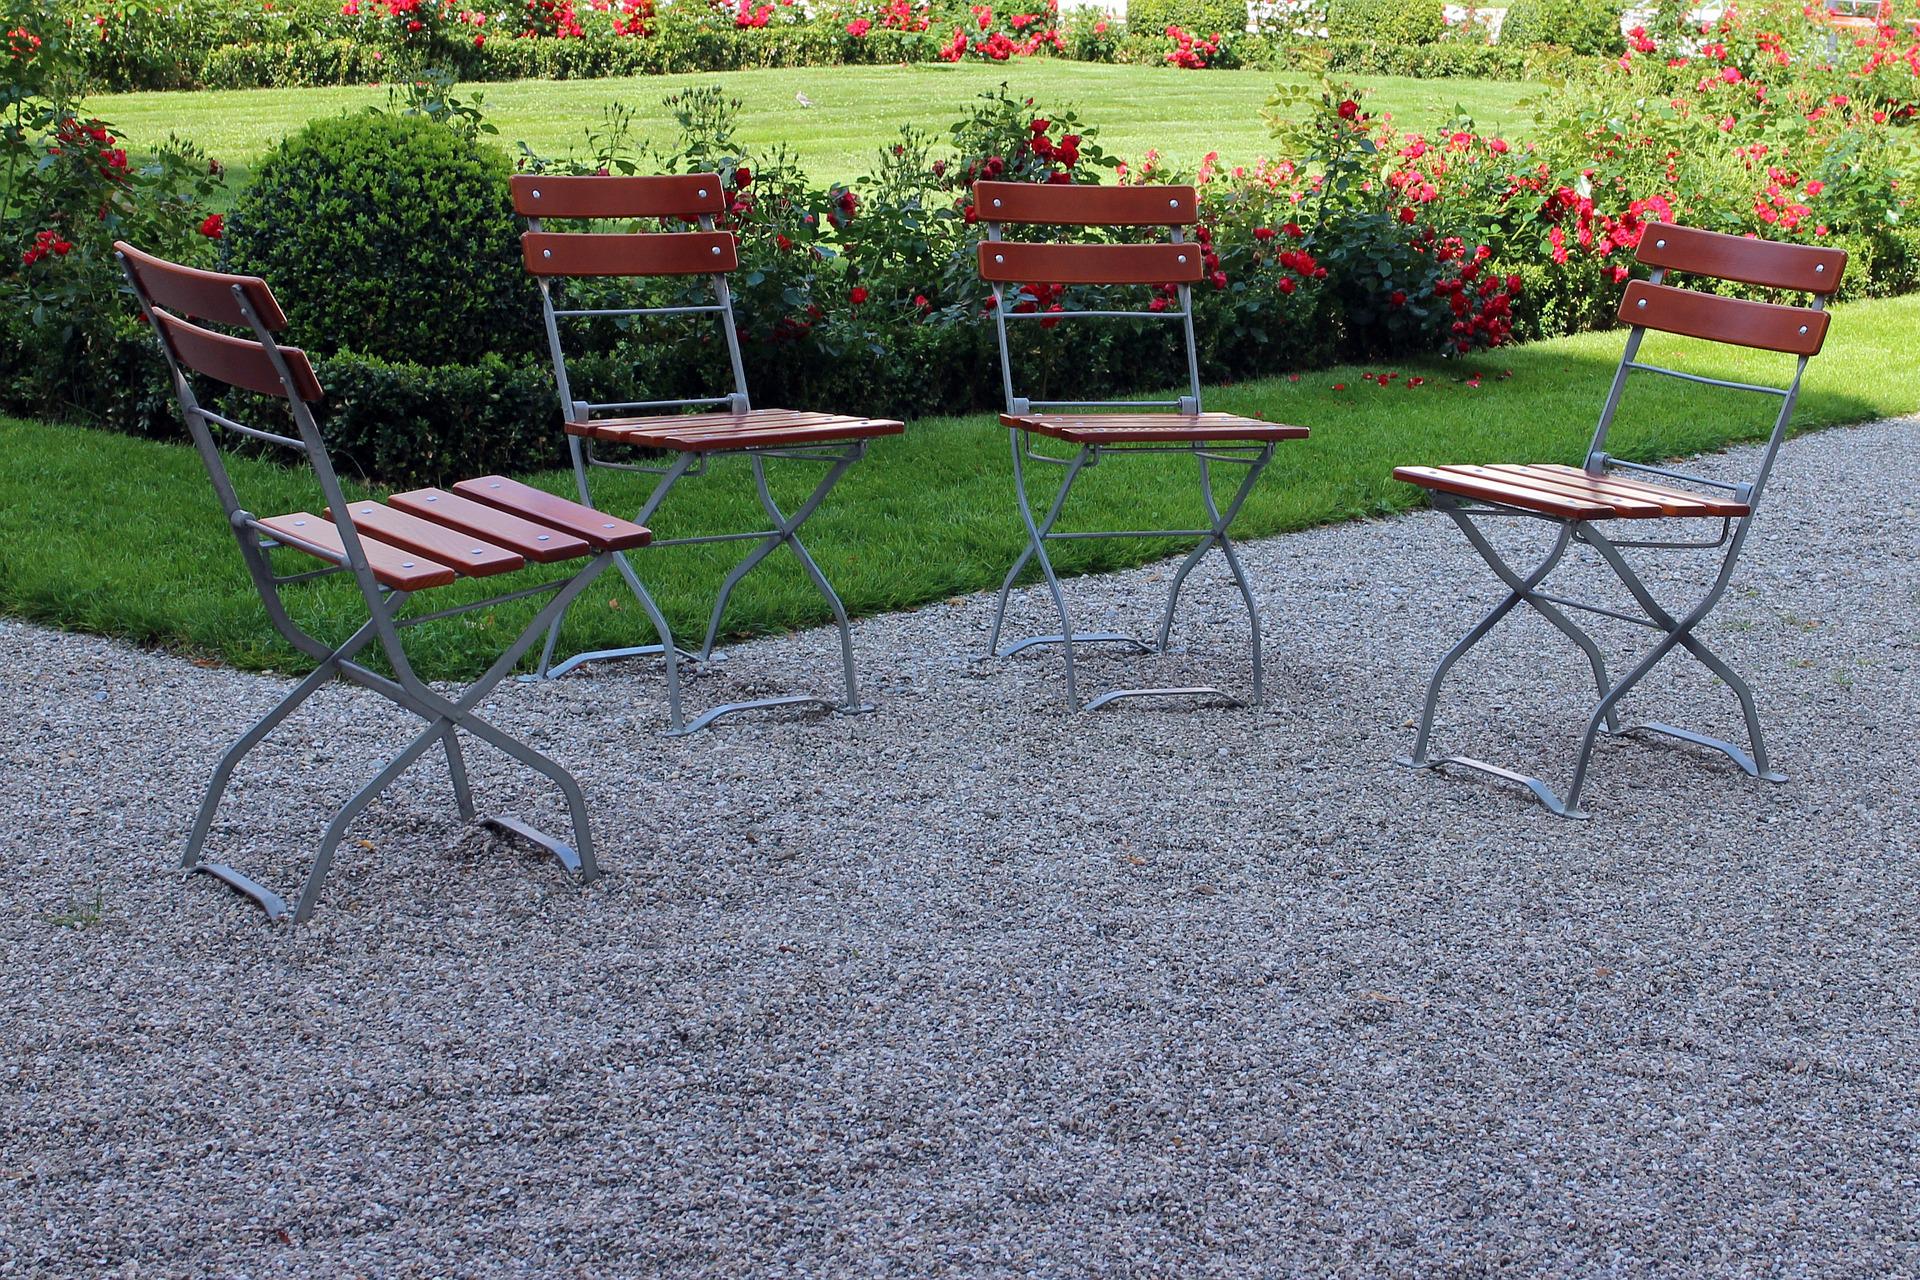 Składane krzesła stoją w dużym ogrodzie